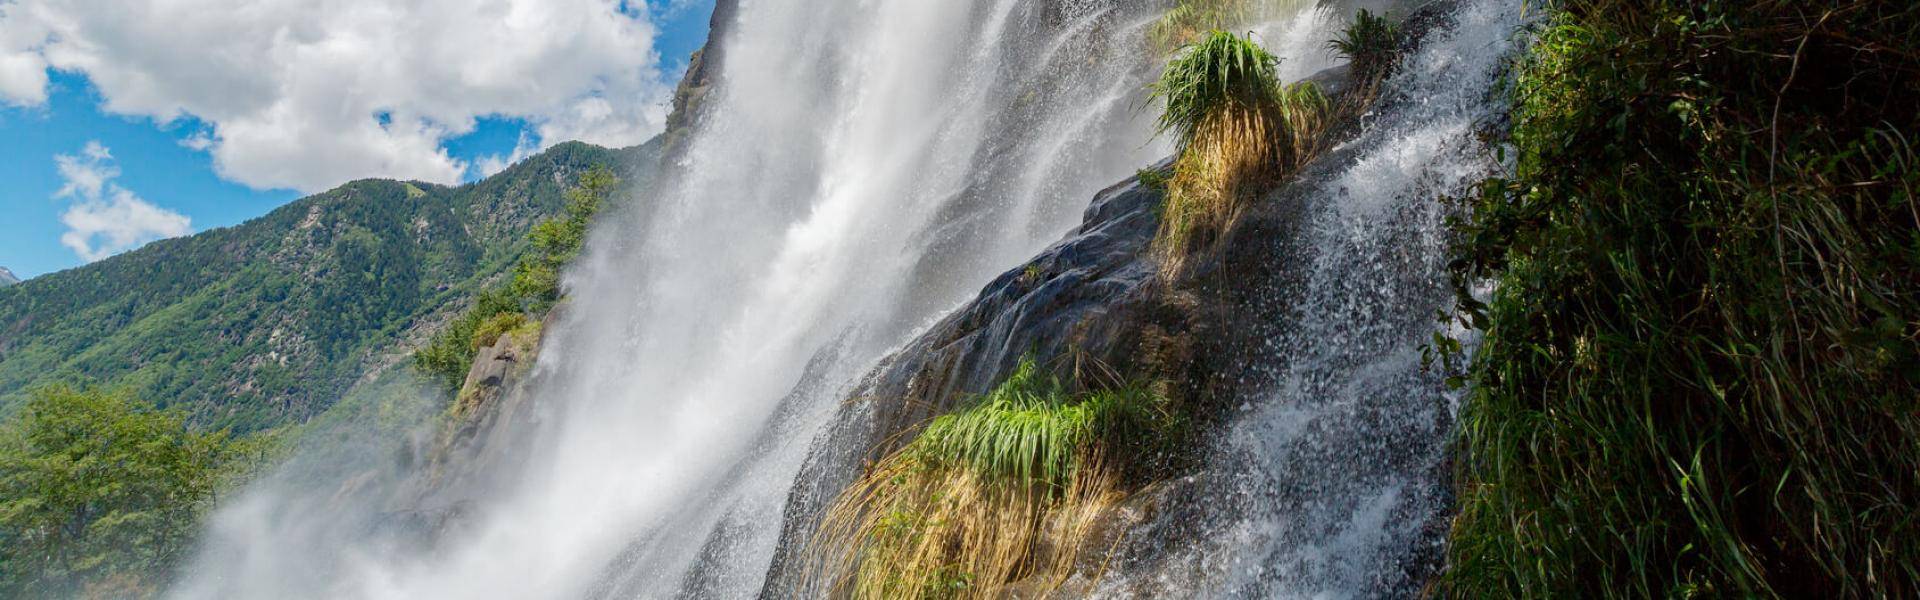 Lo spettacolo naturale e affascinante del salto d'acqua in Val Chiavenna